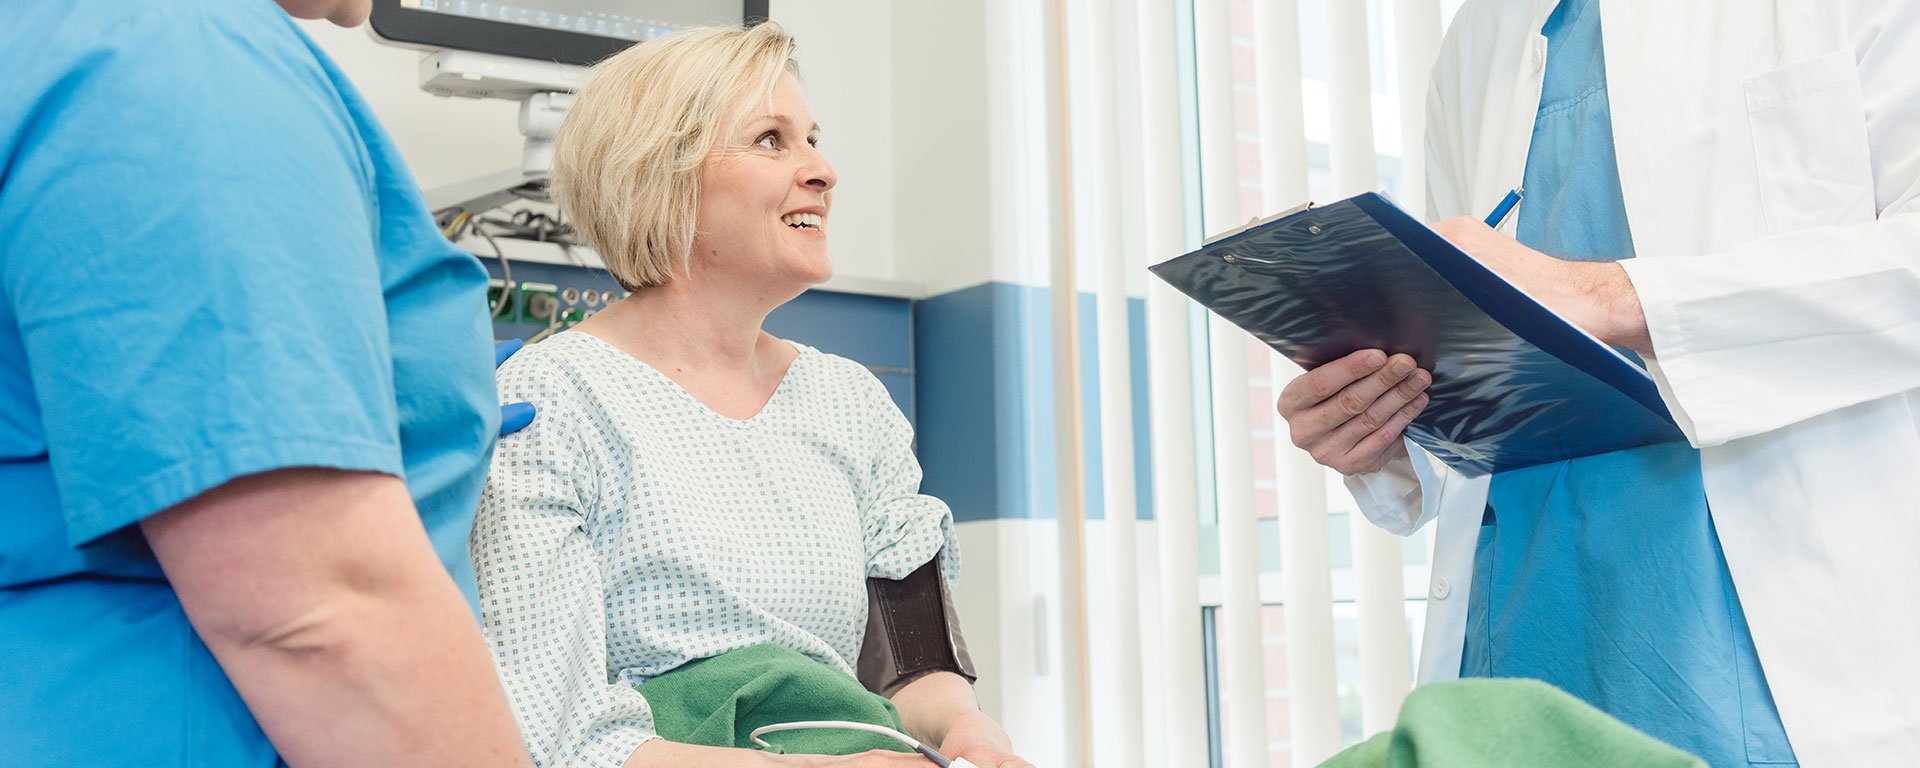 Eine Frau mittleren Alters bespricht sich im Aufwachraum nach einem gynäkologischen Eingriff mit einem jungen Arzt und einer Pflegekraft